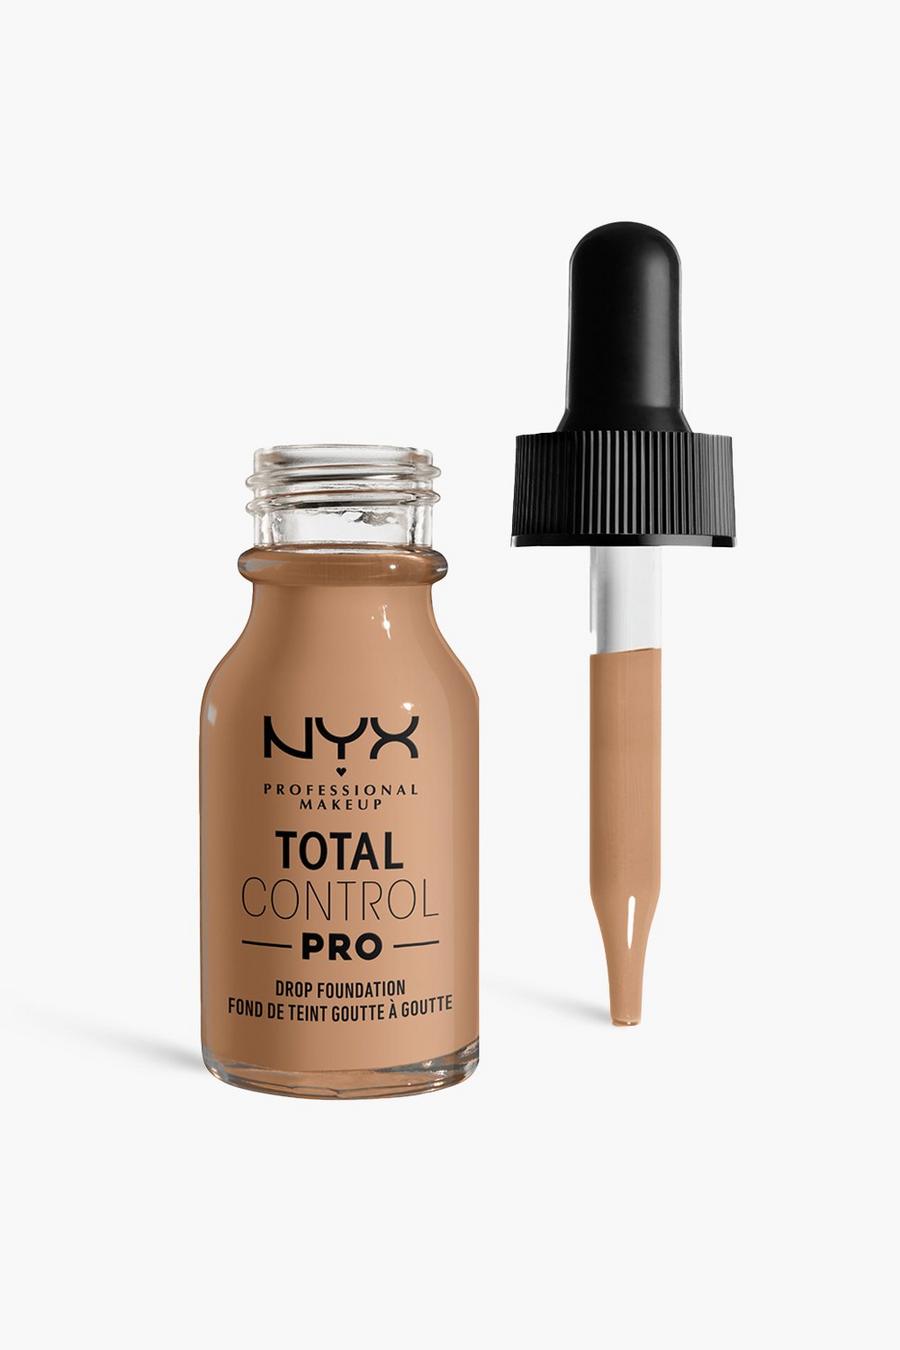 NYX Professional Makeup - Fond de teint couvrant - Total Control, Classic tan